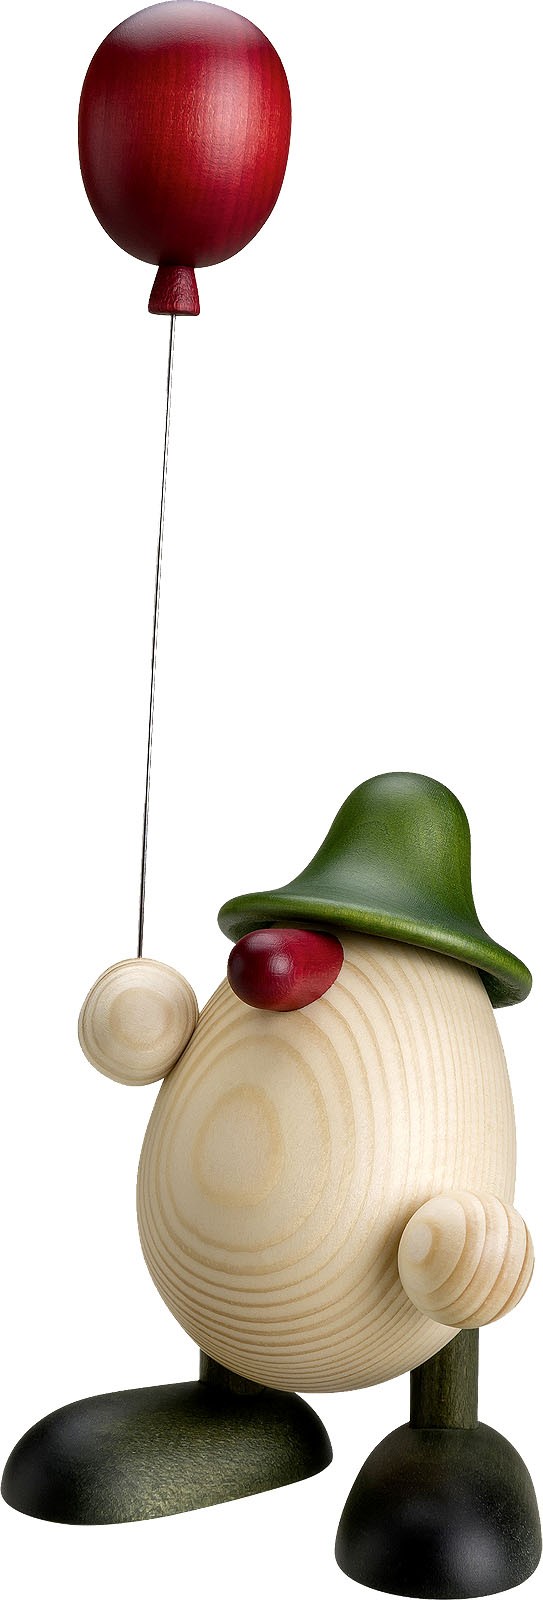 Björn Köhler Eierkopf Otto mit Luftballon, grün